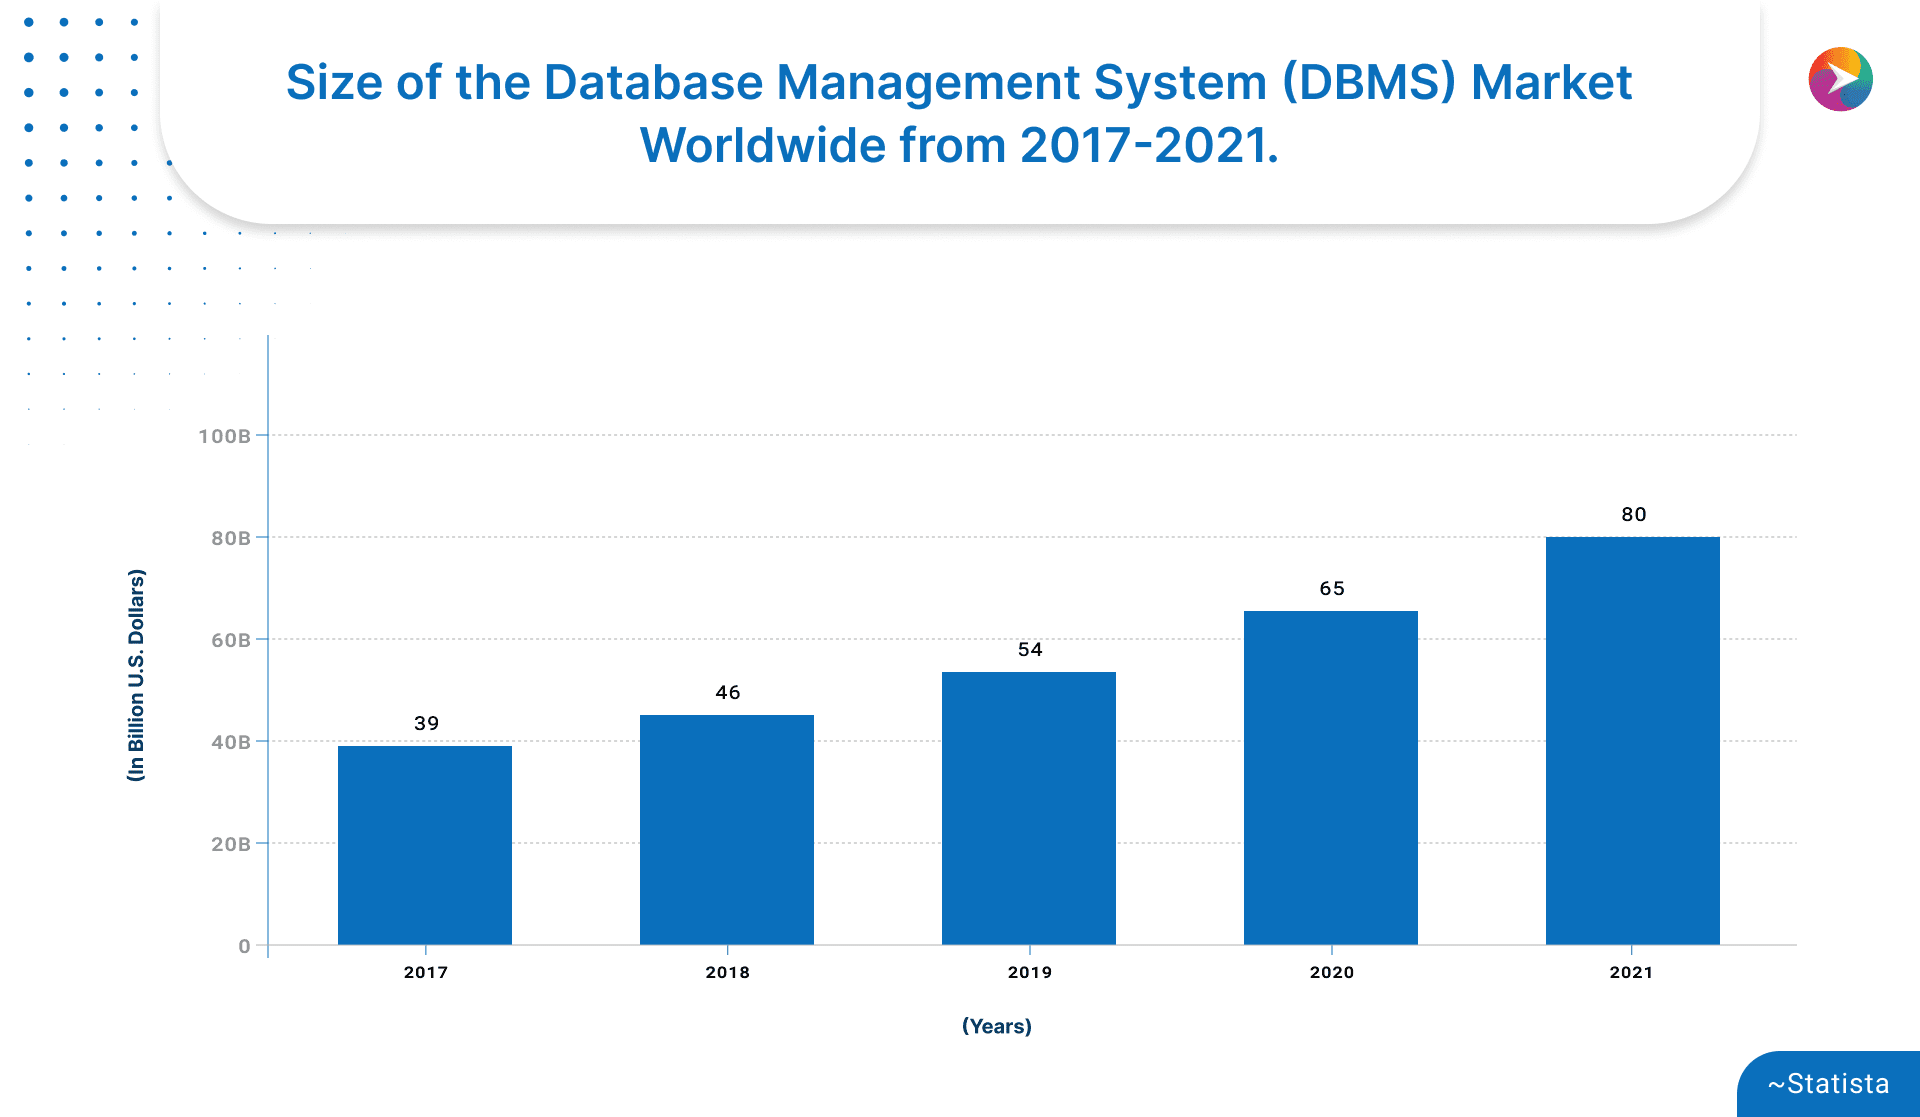 World wide DBMS Data